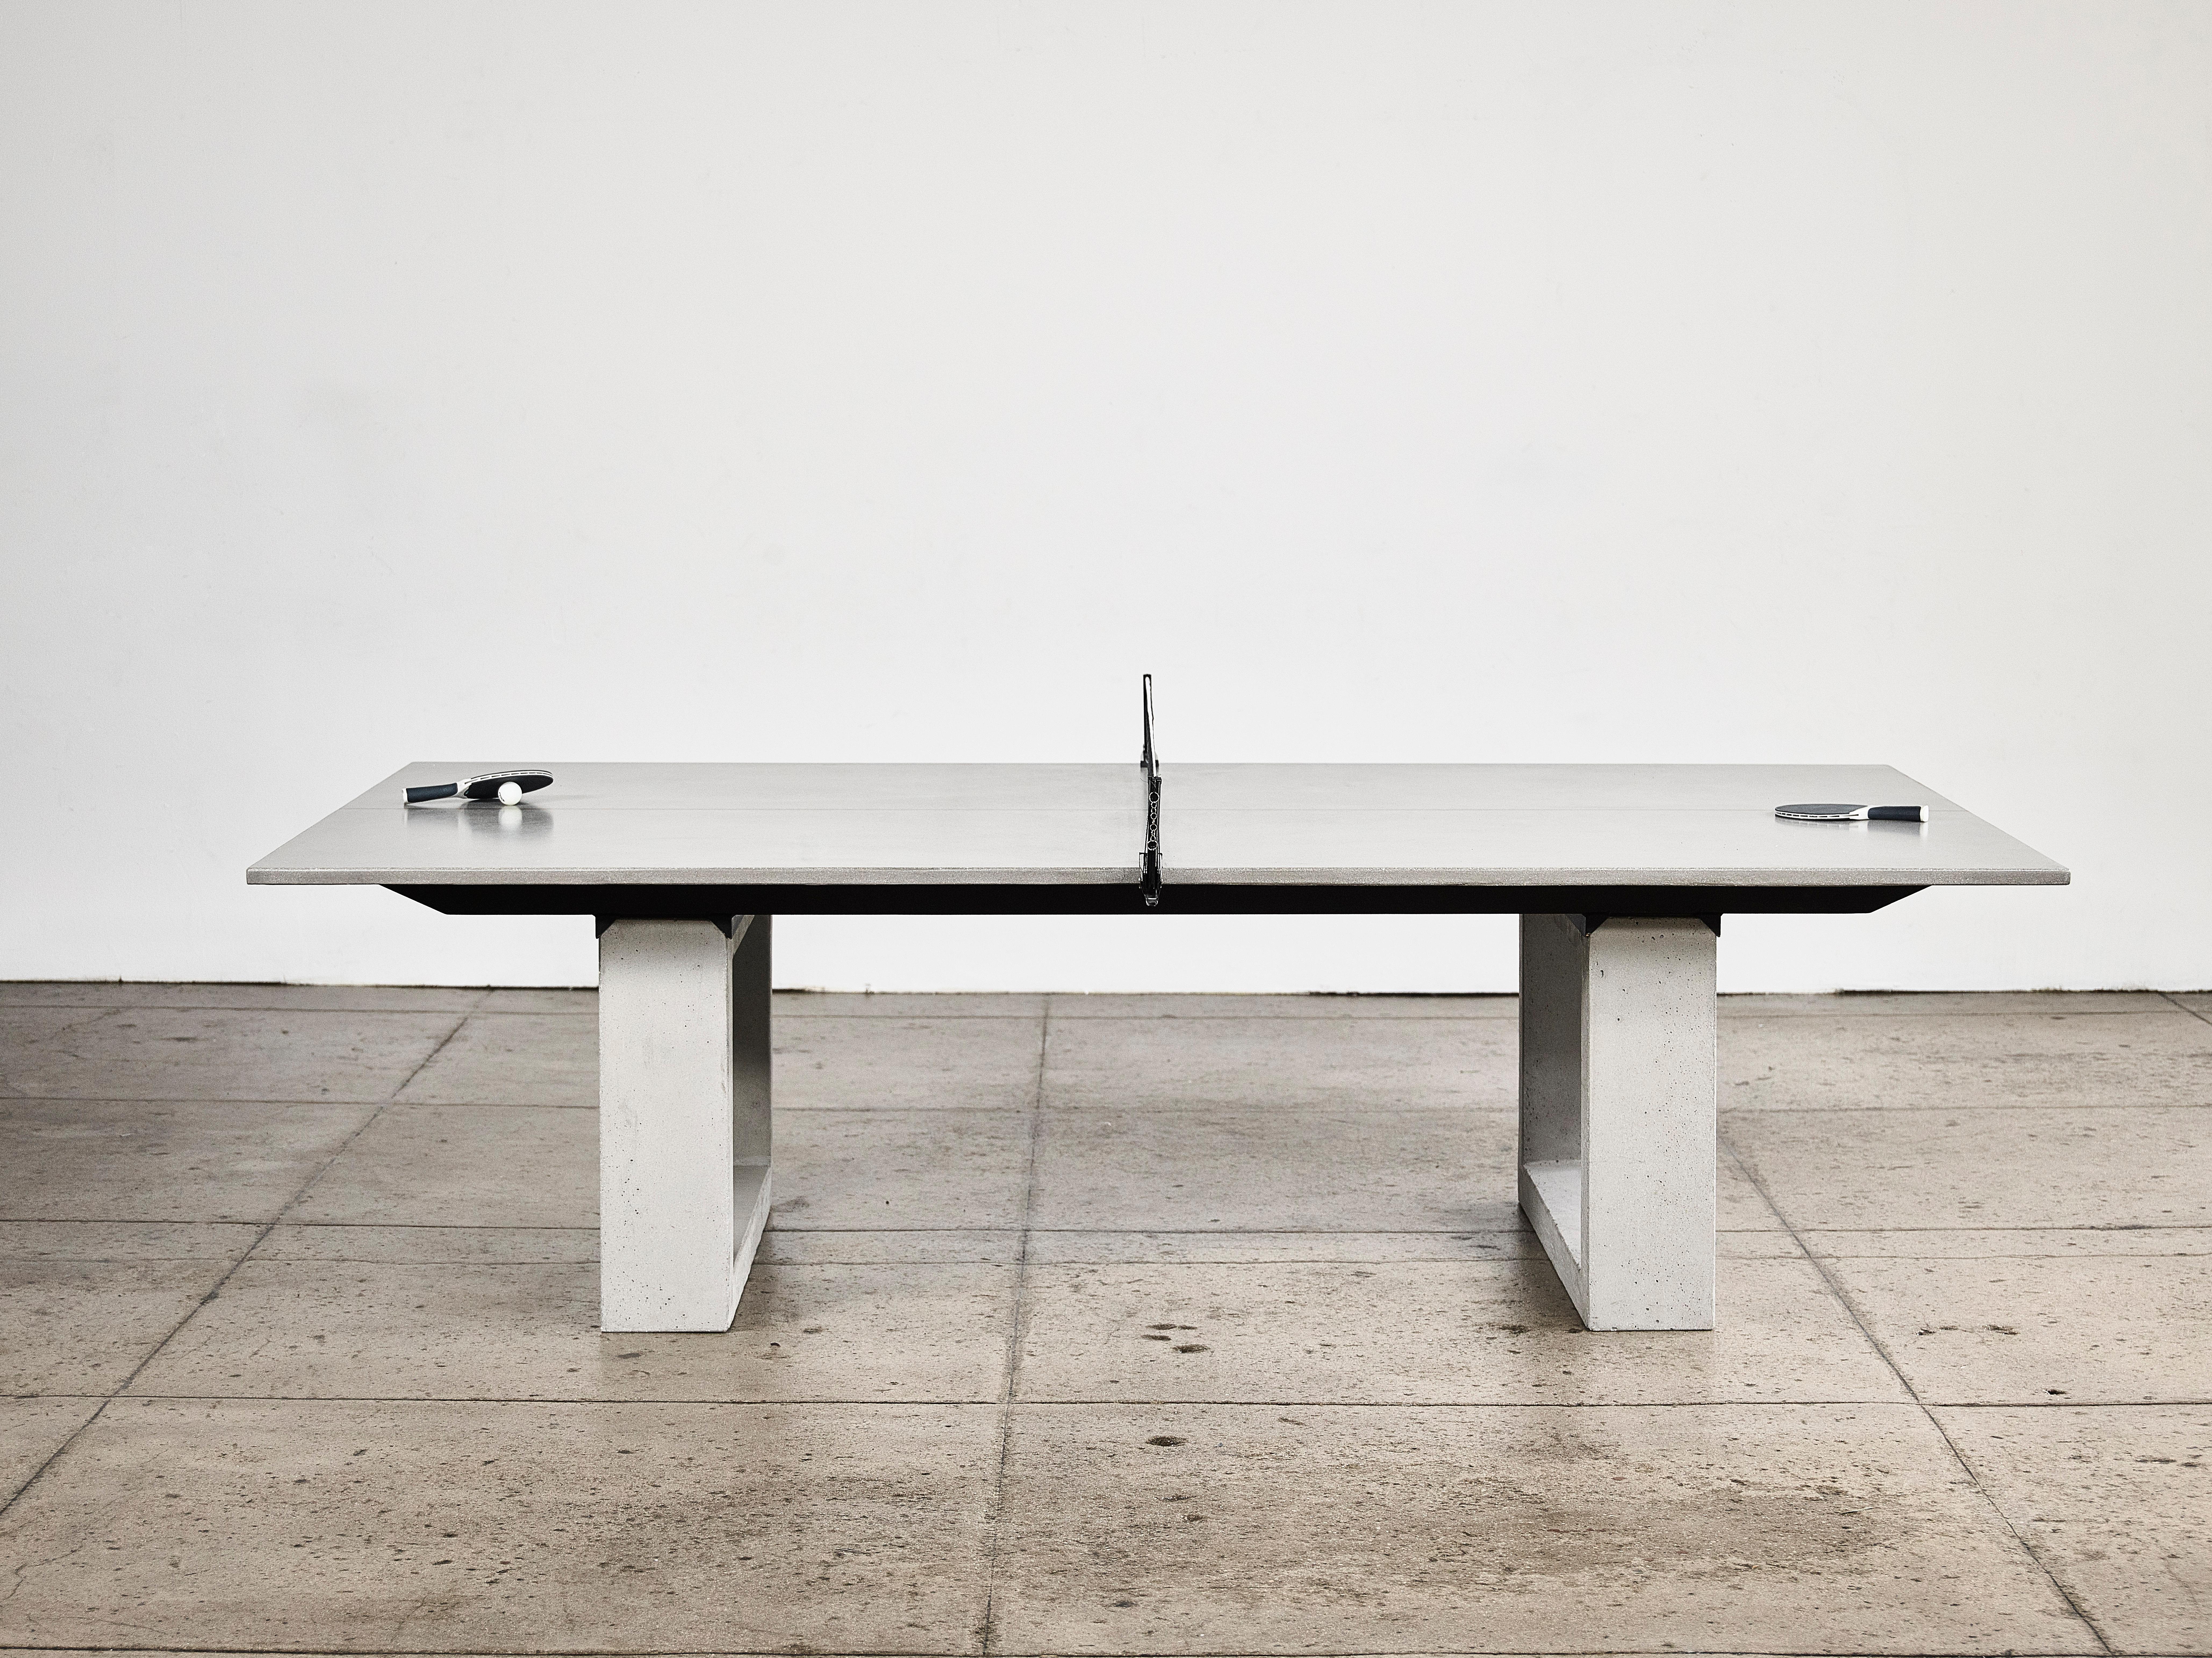 Table de ping-pong commerciale en béton de James de Wulf, avec un plateau de 1,5